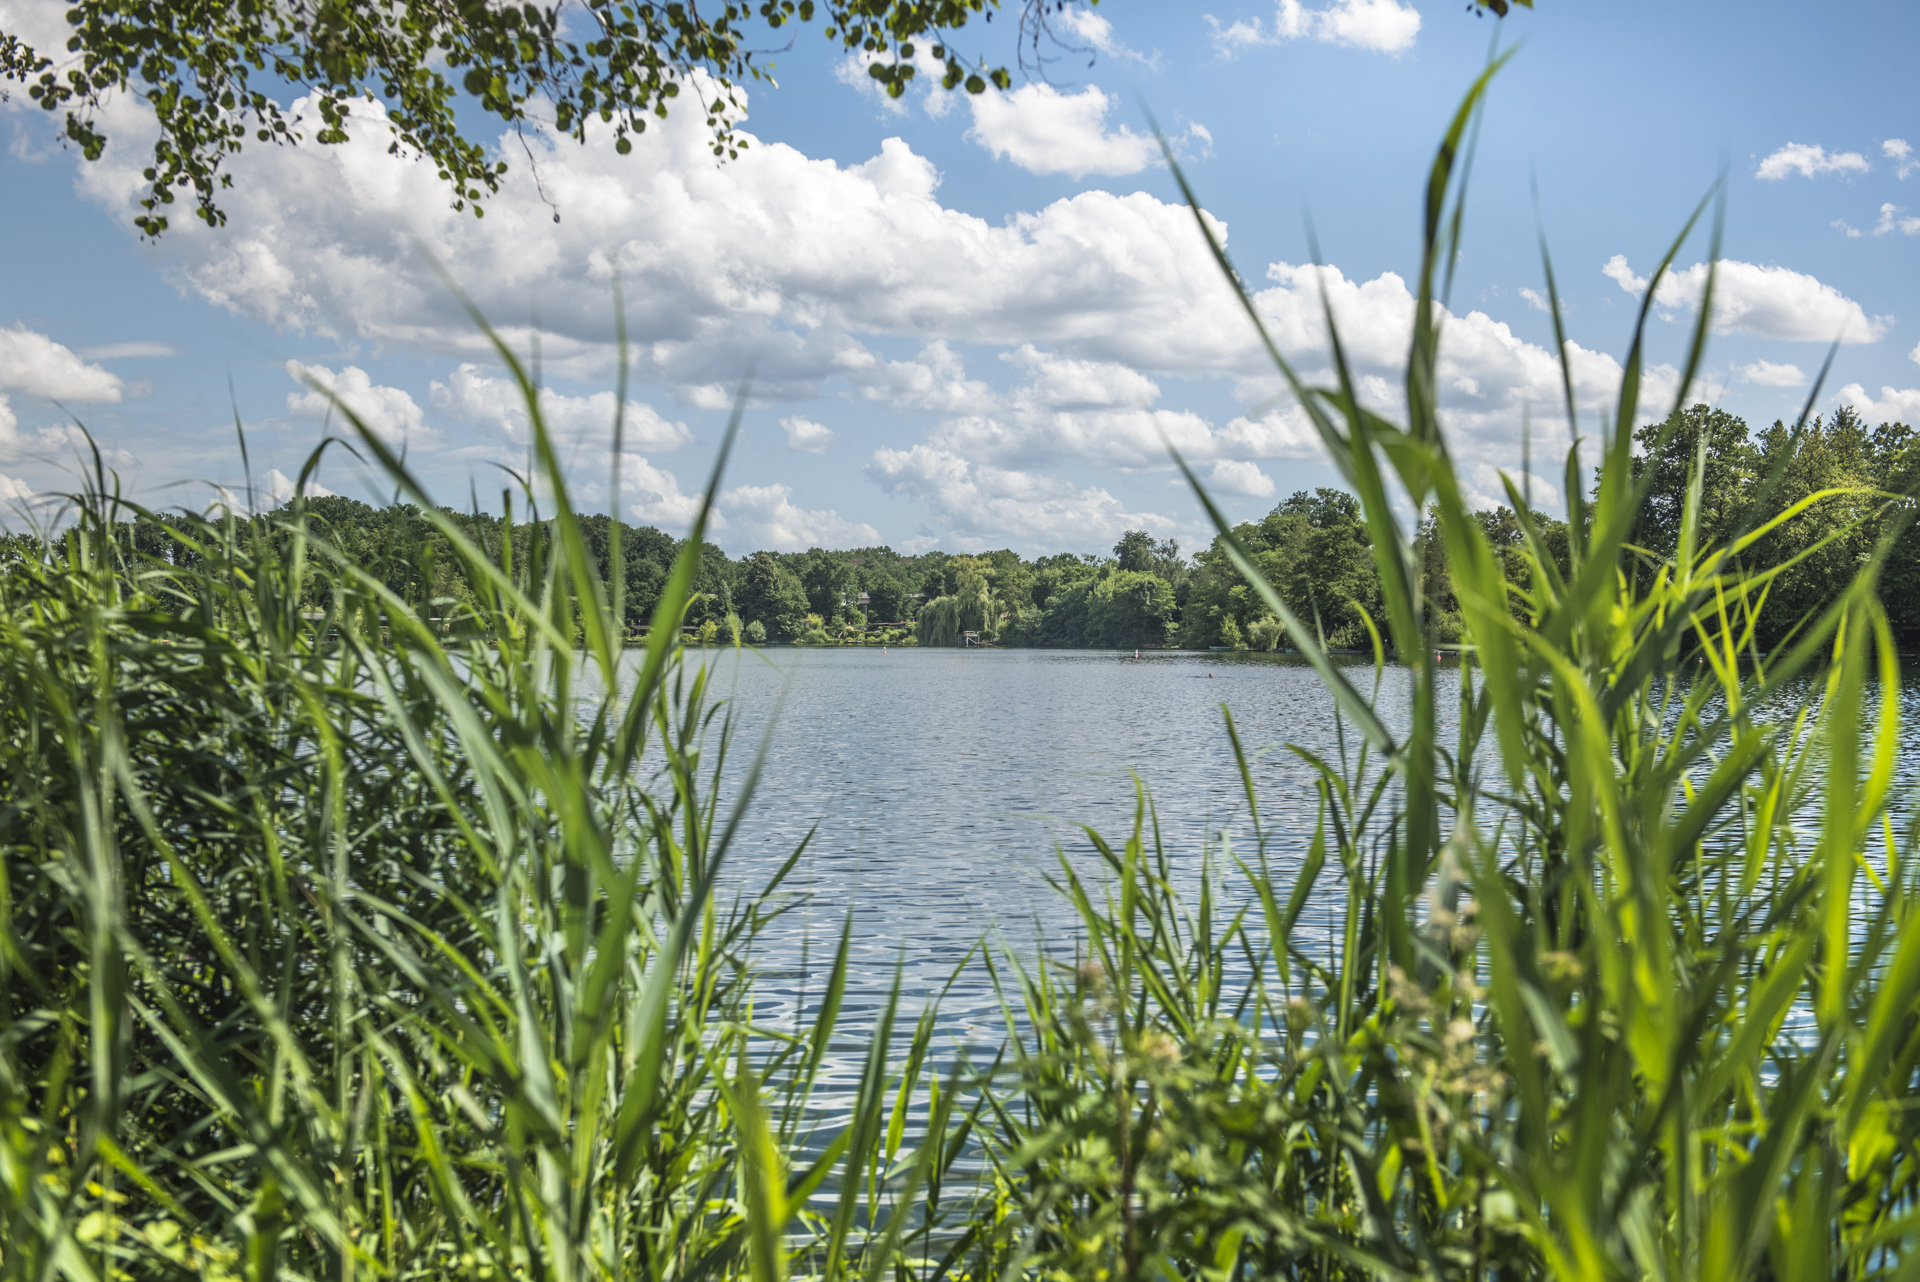 Der Bärensee in Hanau ist ein wunderschöner See, der von grünen Wäldern umgeben ist und eine idyllische Atmosphäre bietet.